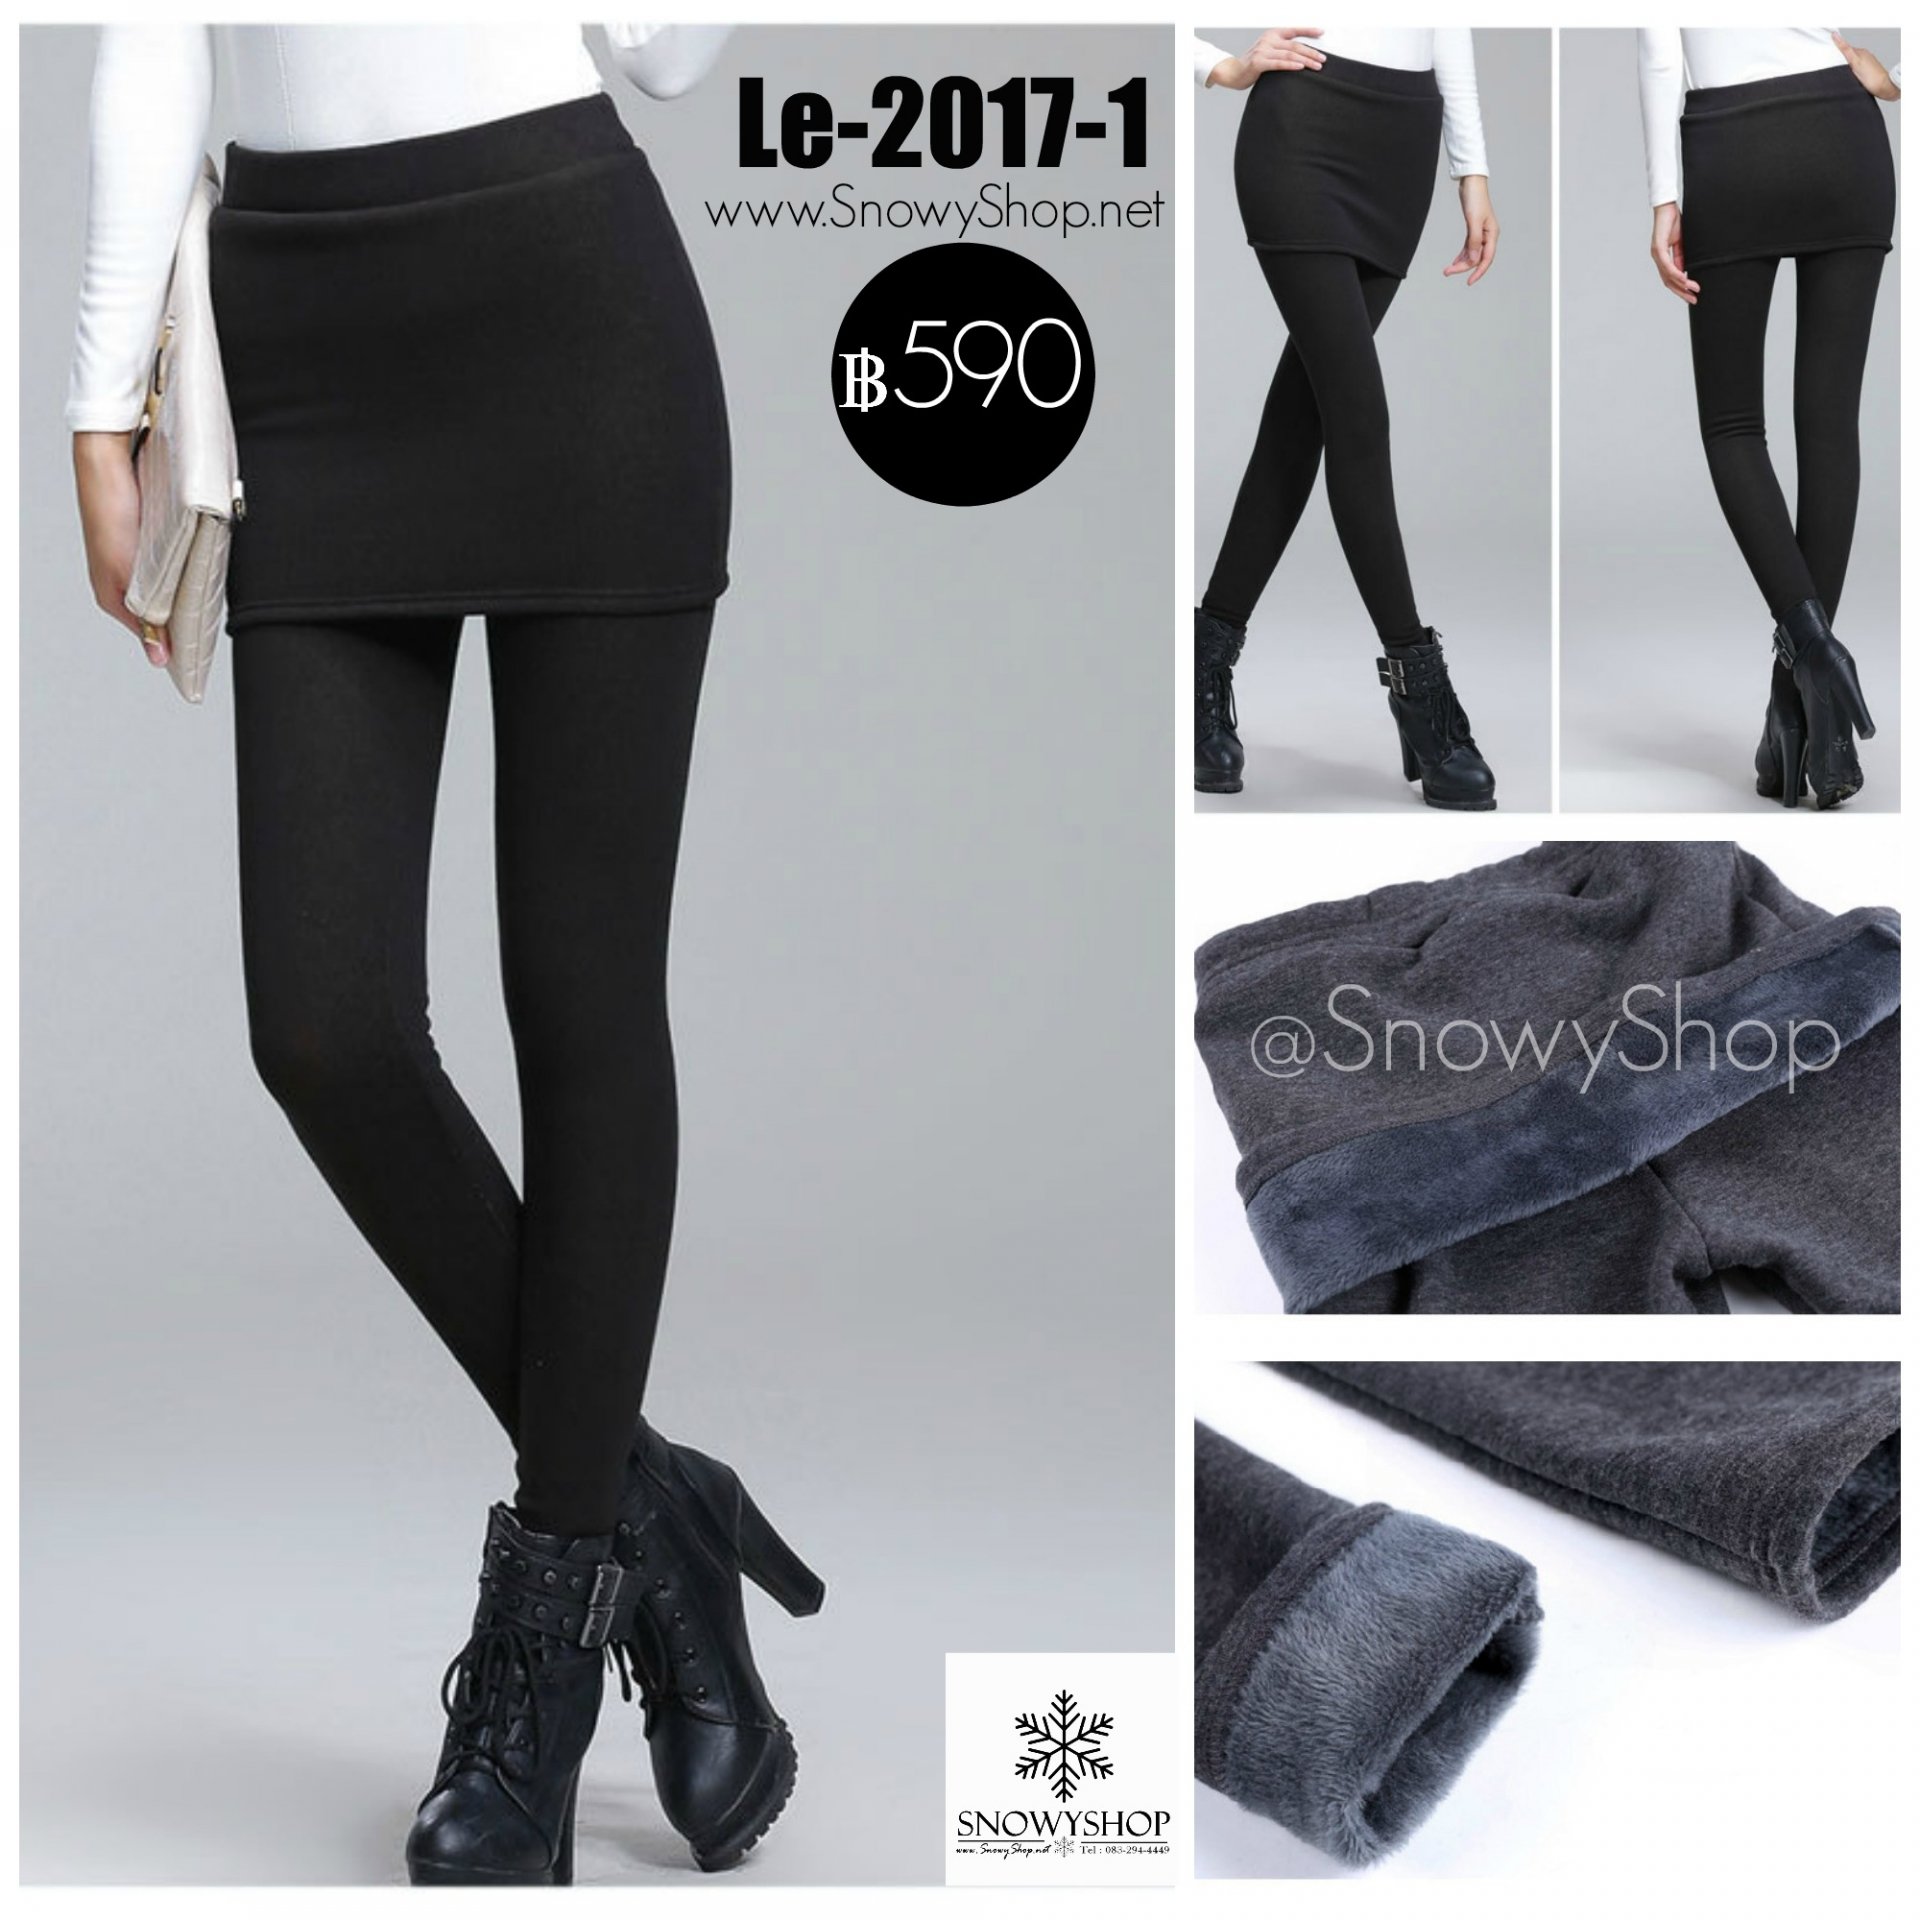 [พร้อมส่ง S M ] [Le-2017-1] Leggings เลคกิ้งติดกระโปรงสีดำผ้าวูลกันหนาวได้ สวยมากๆ แนะนำค่ะ